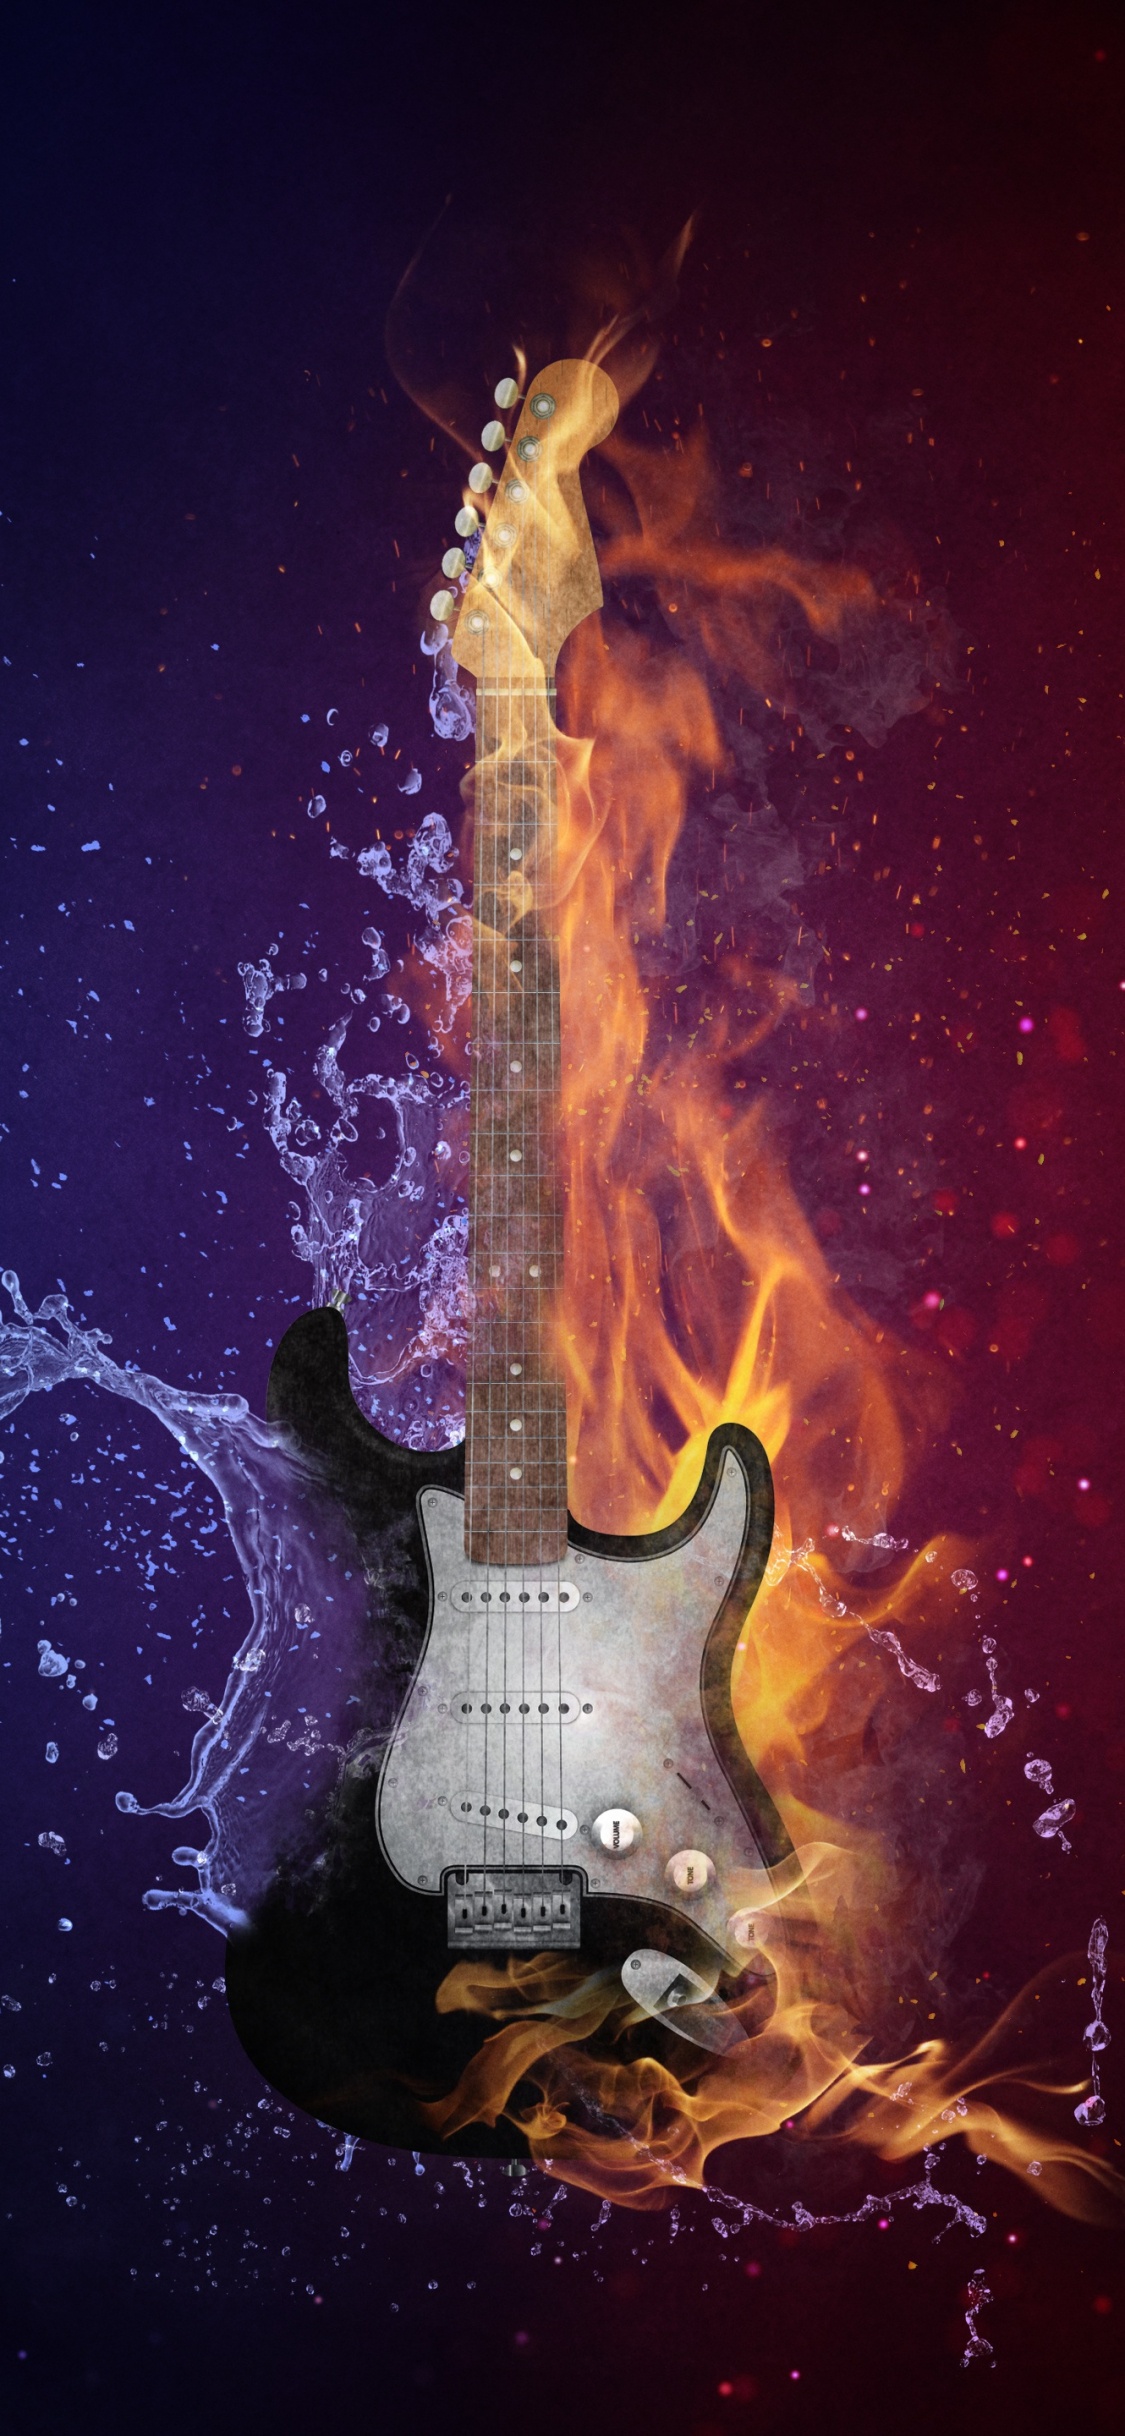 Guitarra, Calor, Llama, Fuego, Ambiente. Wallpaper in 1125x2436 Resolution